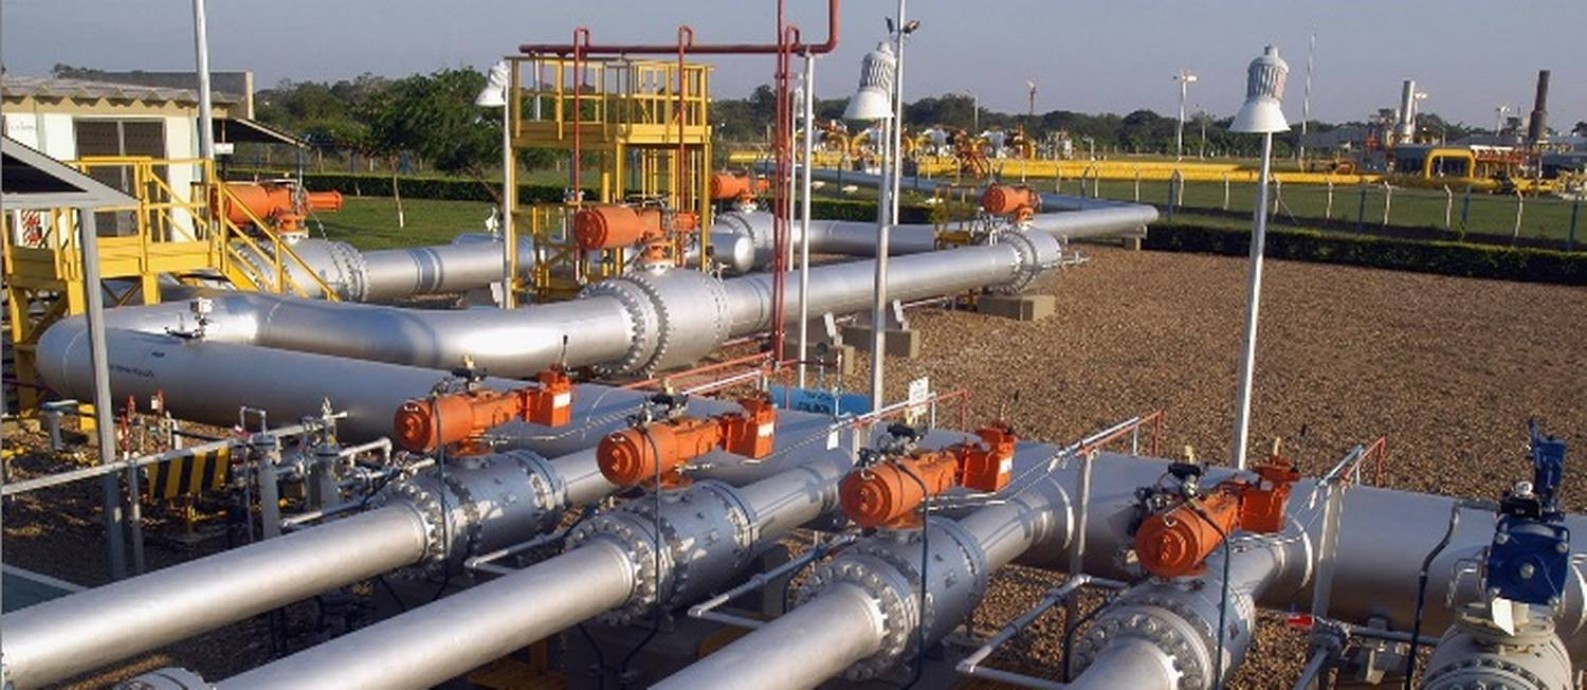 Gasoduto Brasil-Bolívia: Brasil importar gás do país vizinho Foto: Arquivo